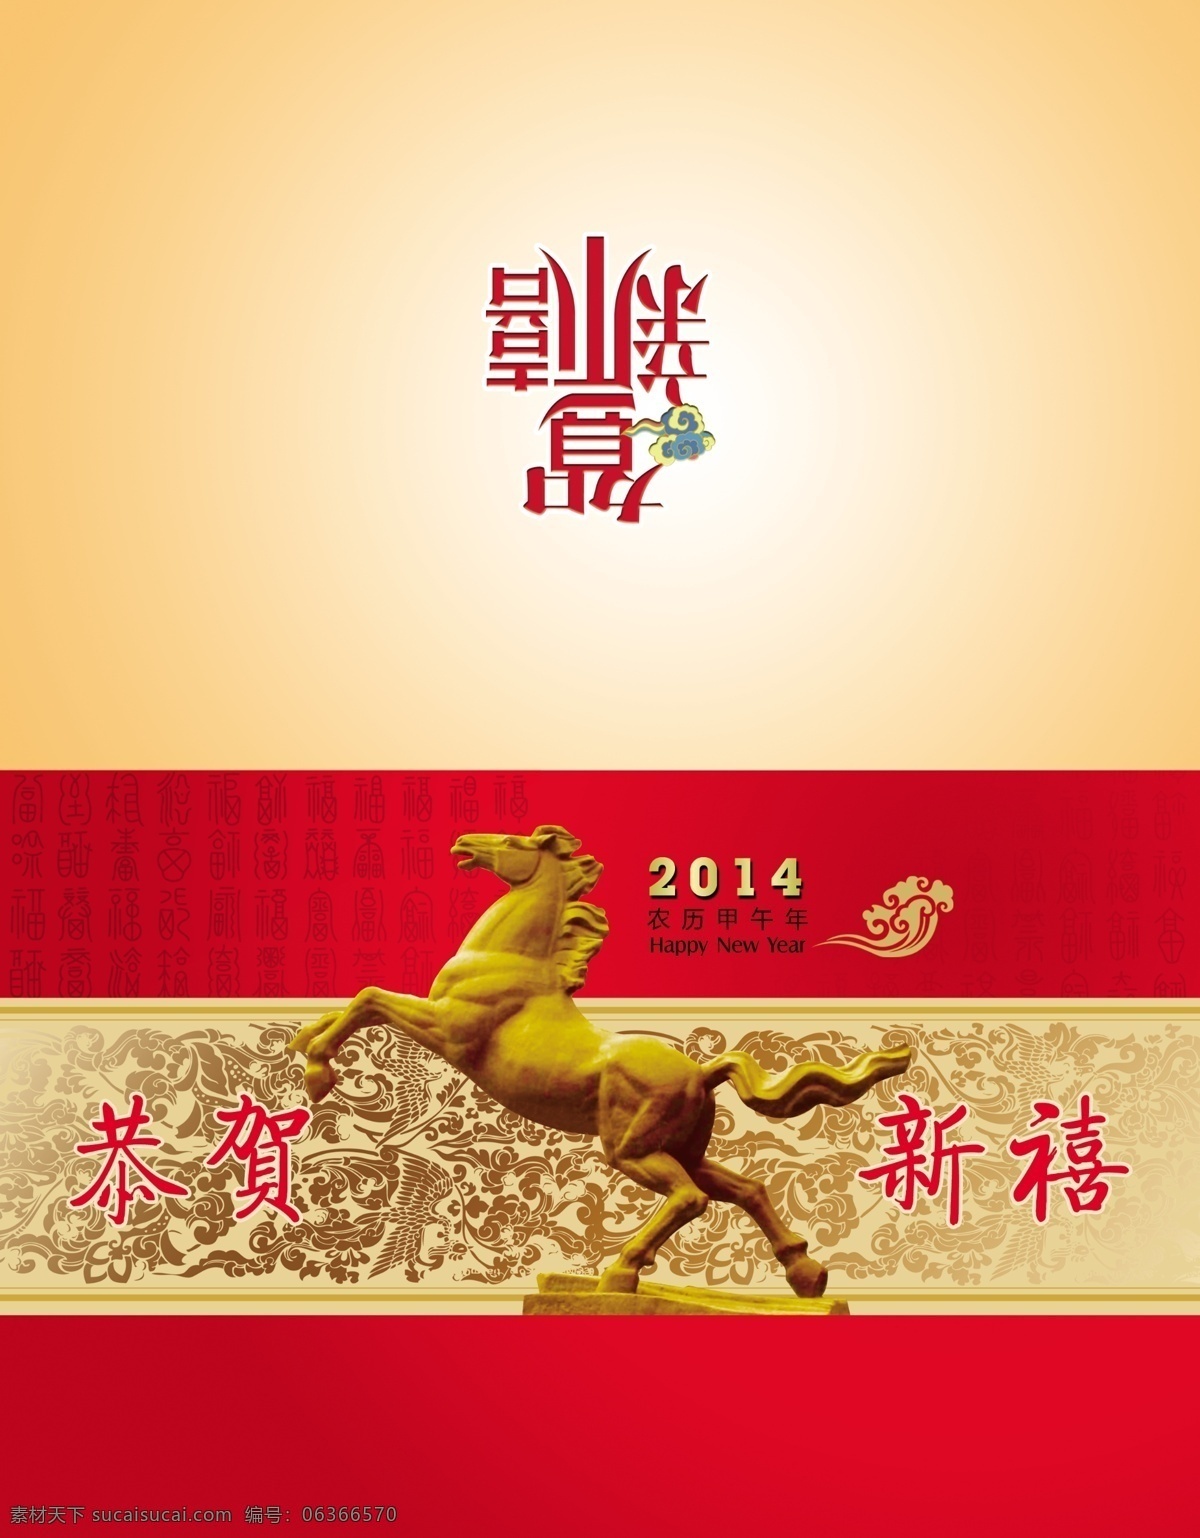 2014 年 马年 贺卡 邮票 邮政 春节 节日素材 喜庆素材 邮票素材 邮政贺卡 邮票模板下载 其他节日